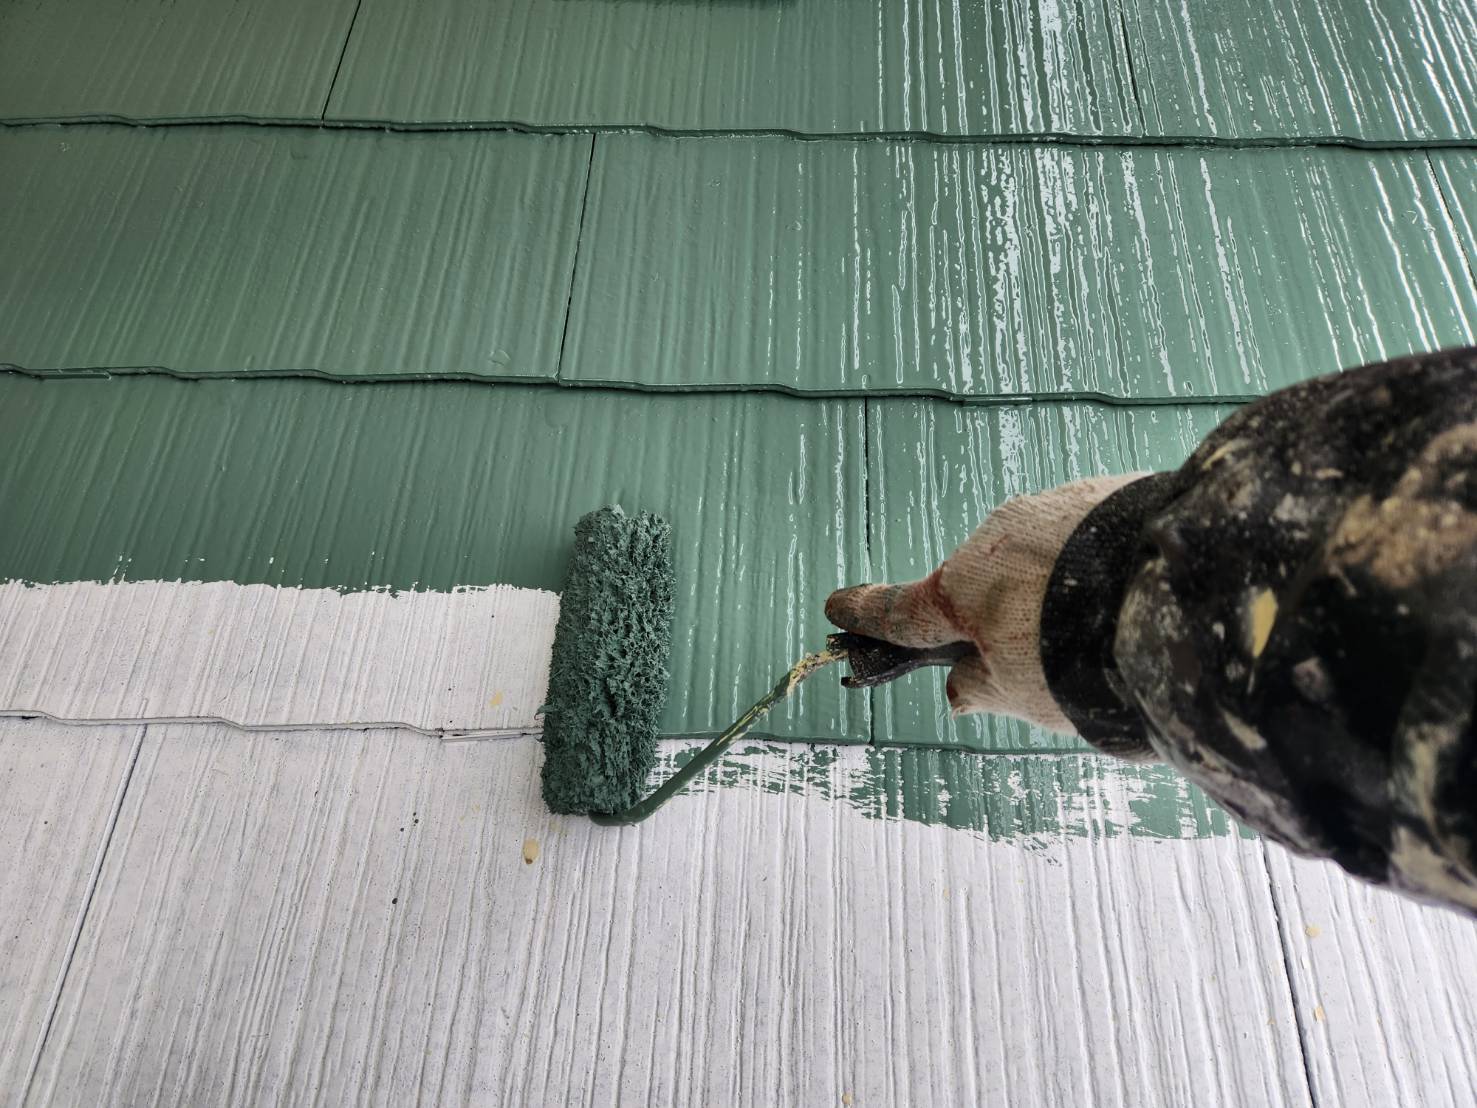 福岡県太宰府市三条のK様邸でチョーキングやコケが発生していた外壁と色褪せを起こしている屋根を塗り替えていきます。2/13着工です。【ホームページより】